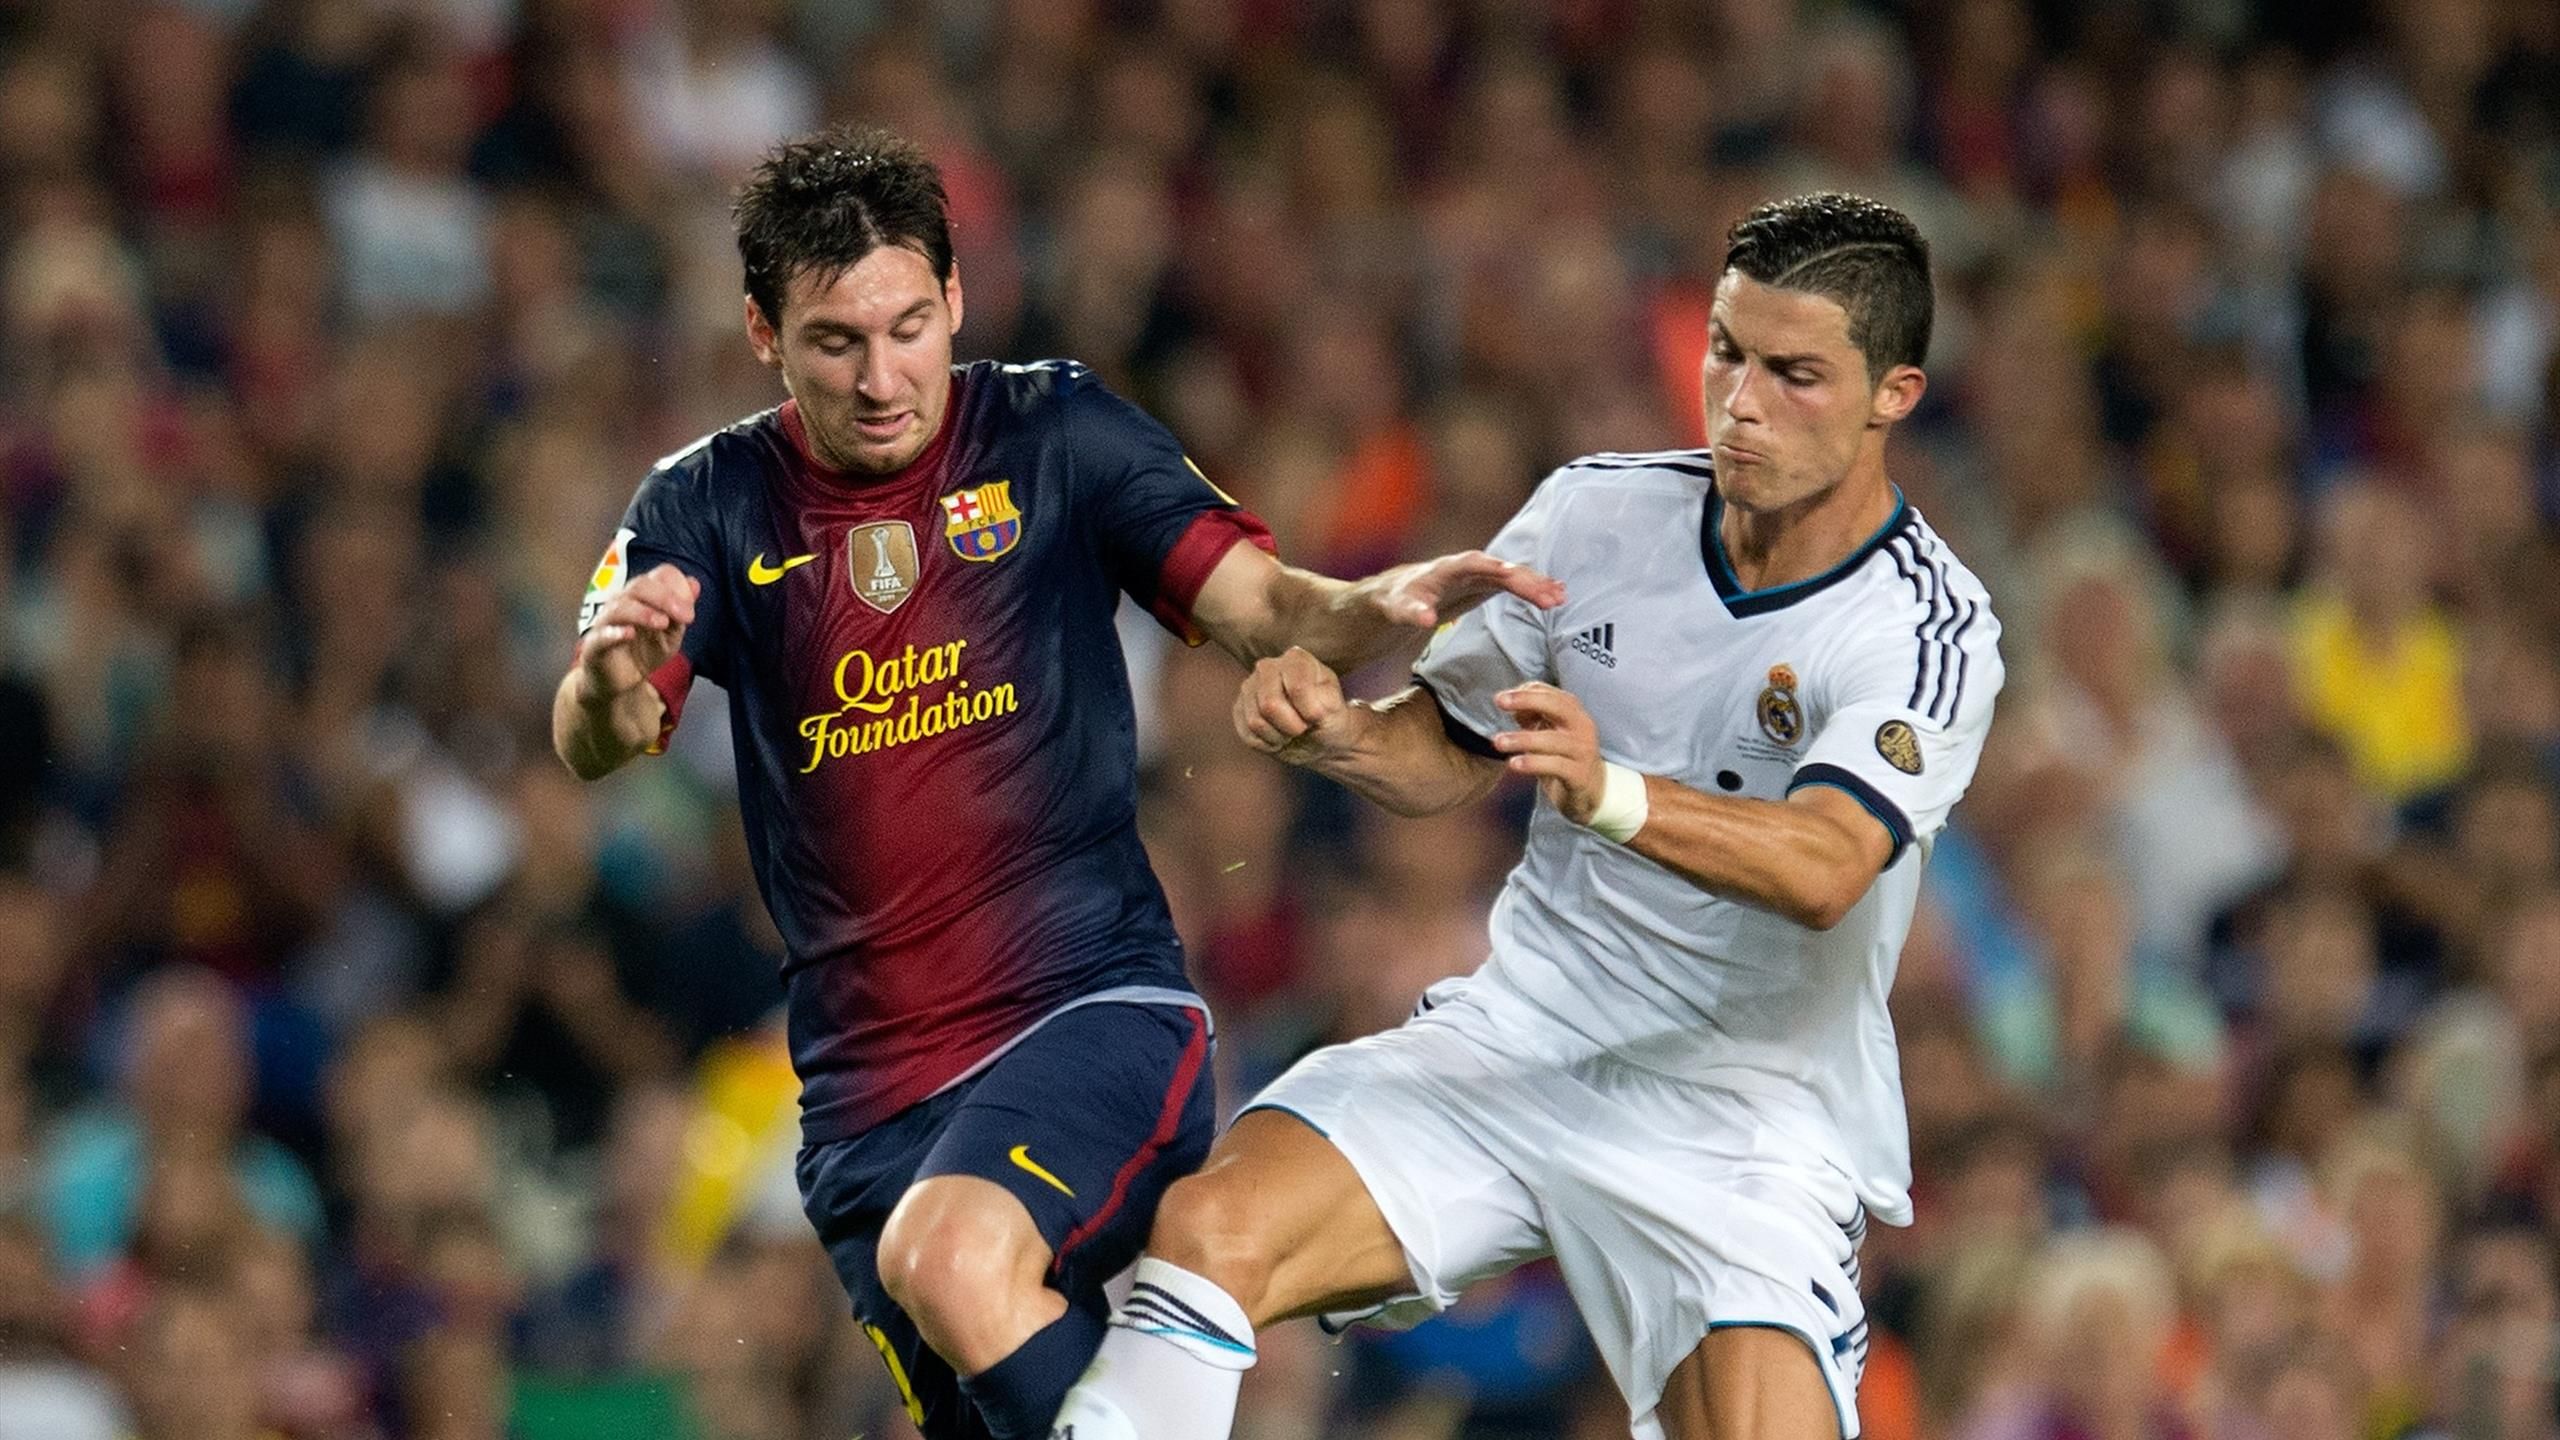 Ronaldo set to face Messi's PSG in Saudi Arabian debut, Football News